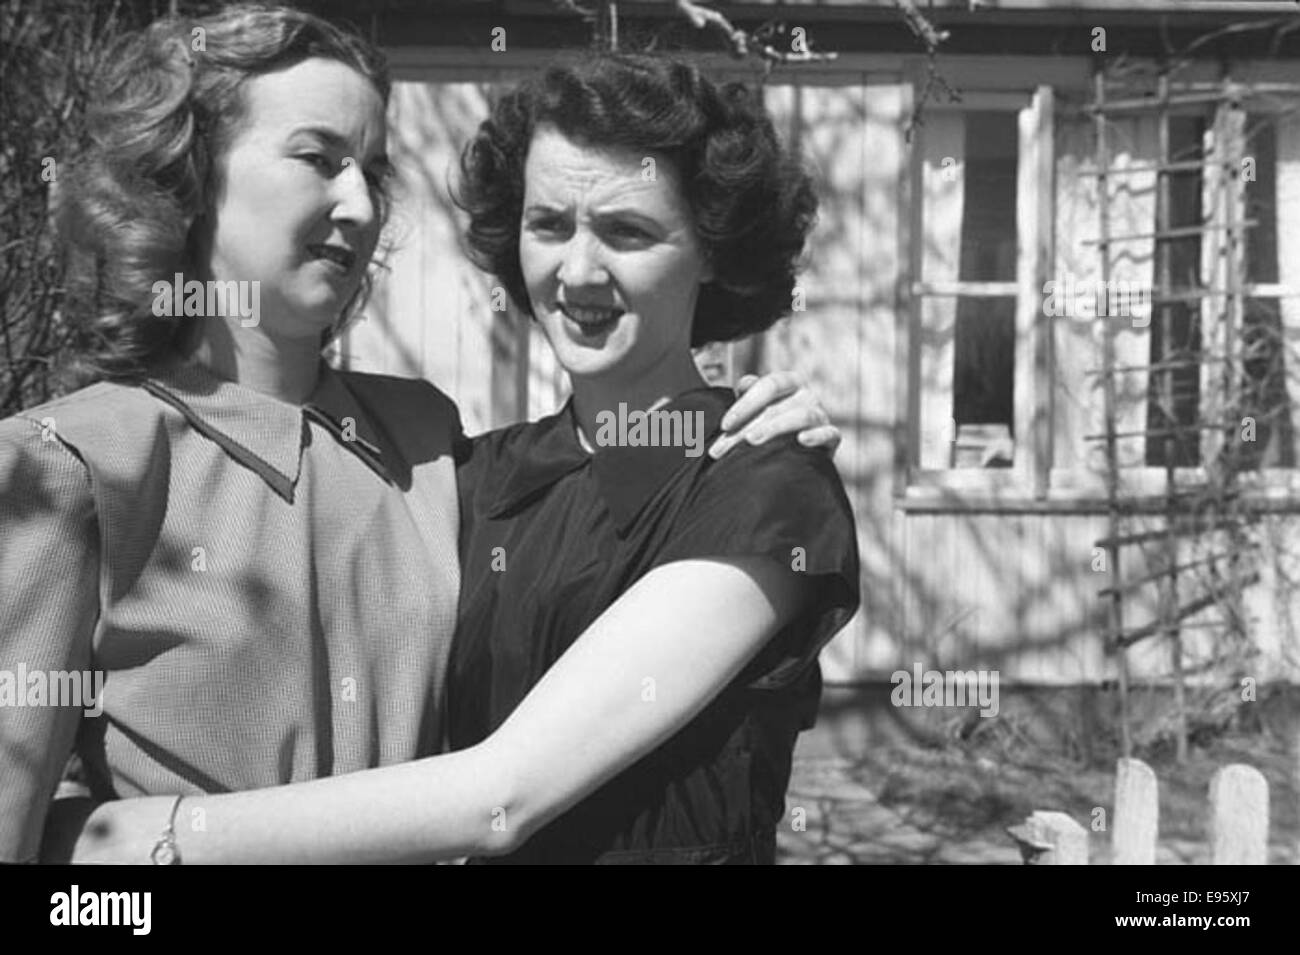 Zwei junge Frauen umarmen (INA + JOANNE) der 1950er Jahre Fotos 21/4 x 31/4 negativ, dies ist einer der 54 im Album "Fort Macleod anonym". Die meisten sind in den späten 1940er Jahren in Fort Macleod, Alberta gedreht. Der Spender des Fotos Stockfoto